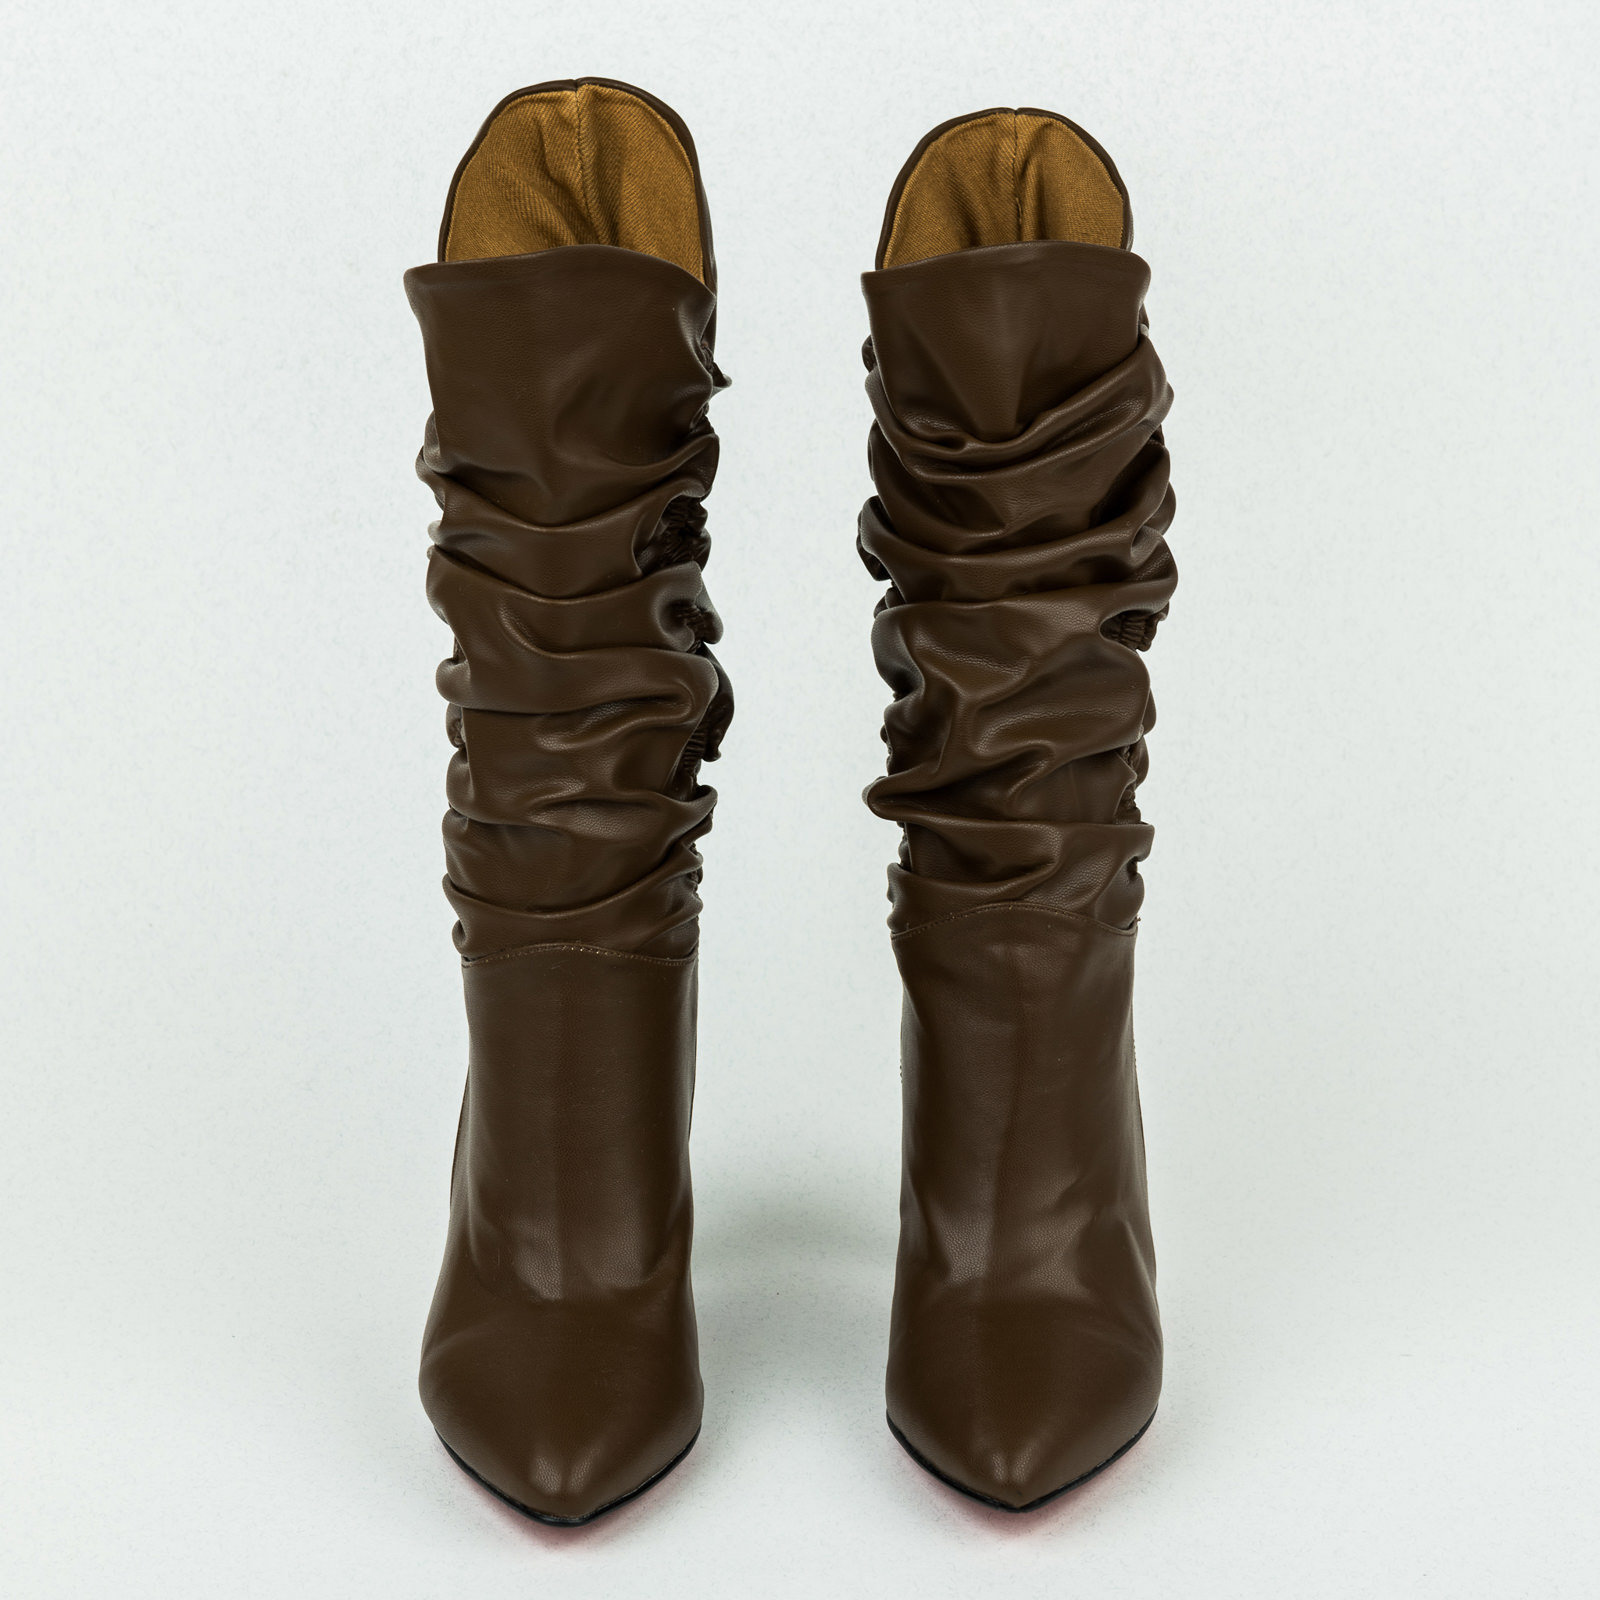 Women boots B035 - BROWN